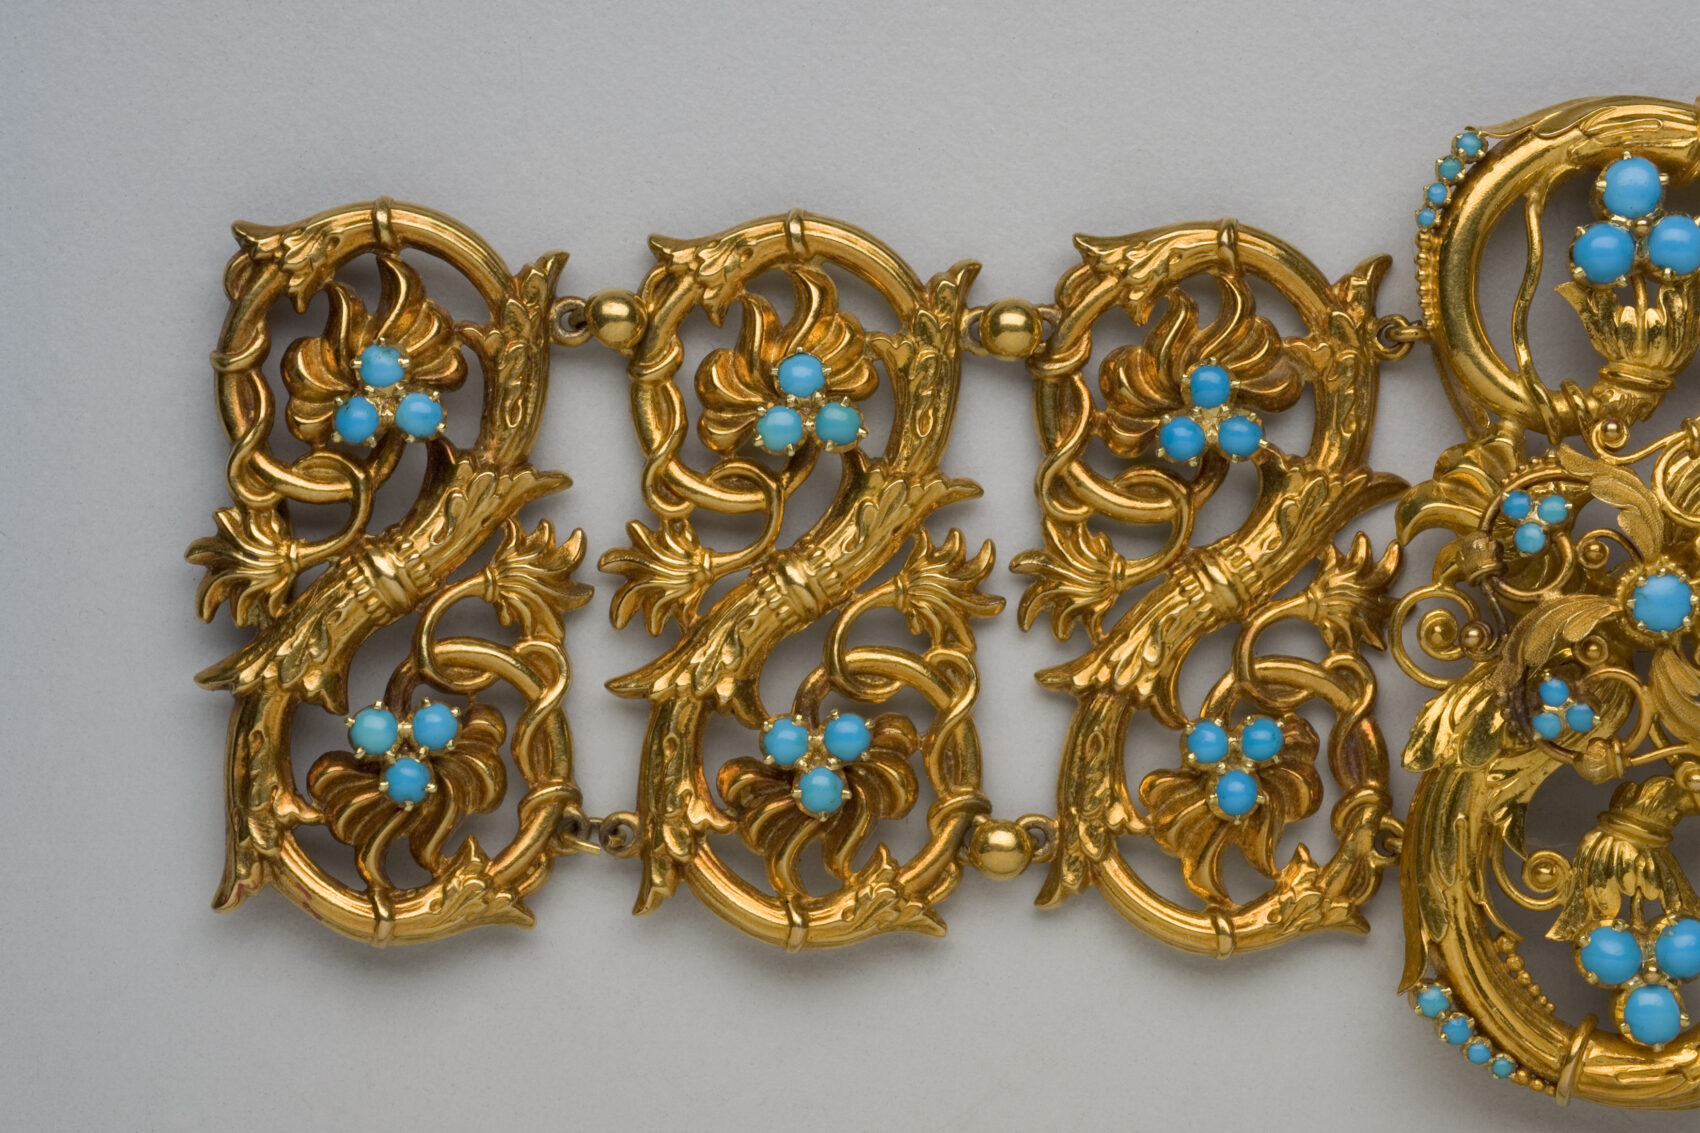 Zlatý ornamentální náramek s modrými kamínky